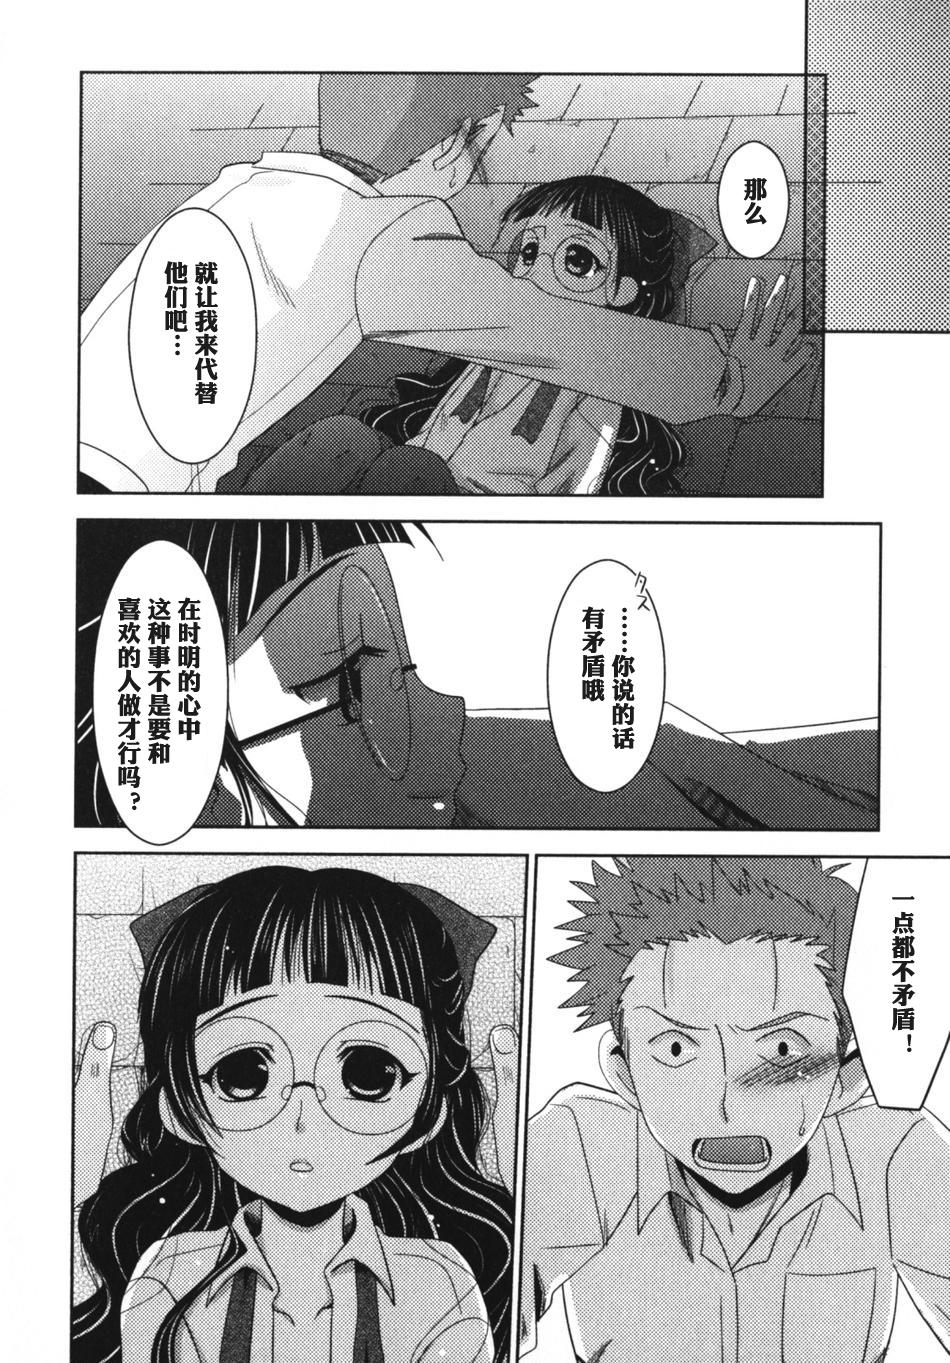 Rubdown Nee, Kotchi wo Muite, Soredemo Mada Kimi wa Kashima - Page 10